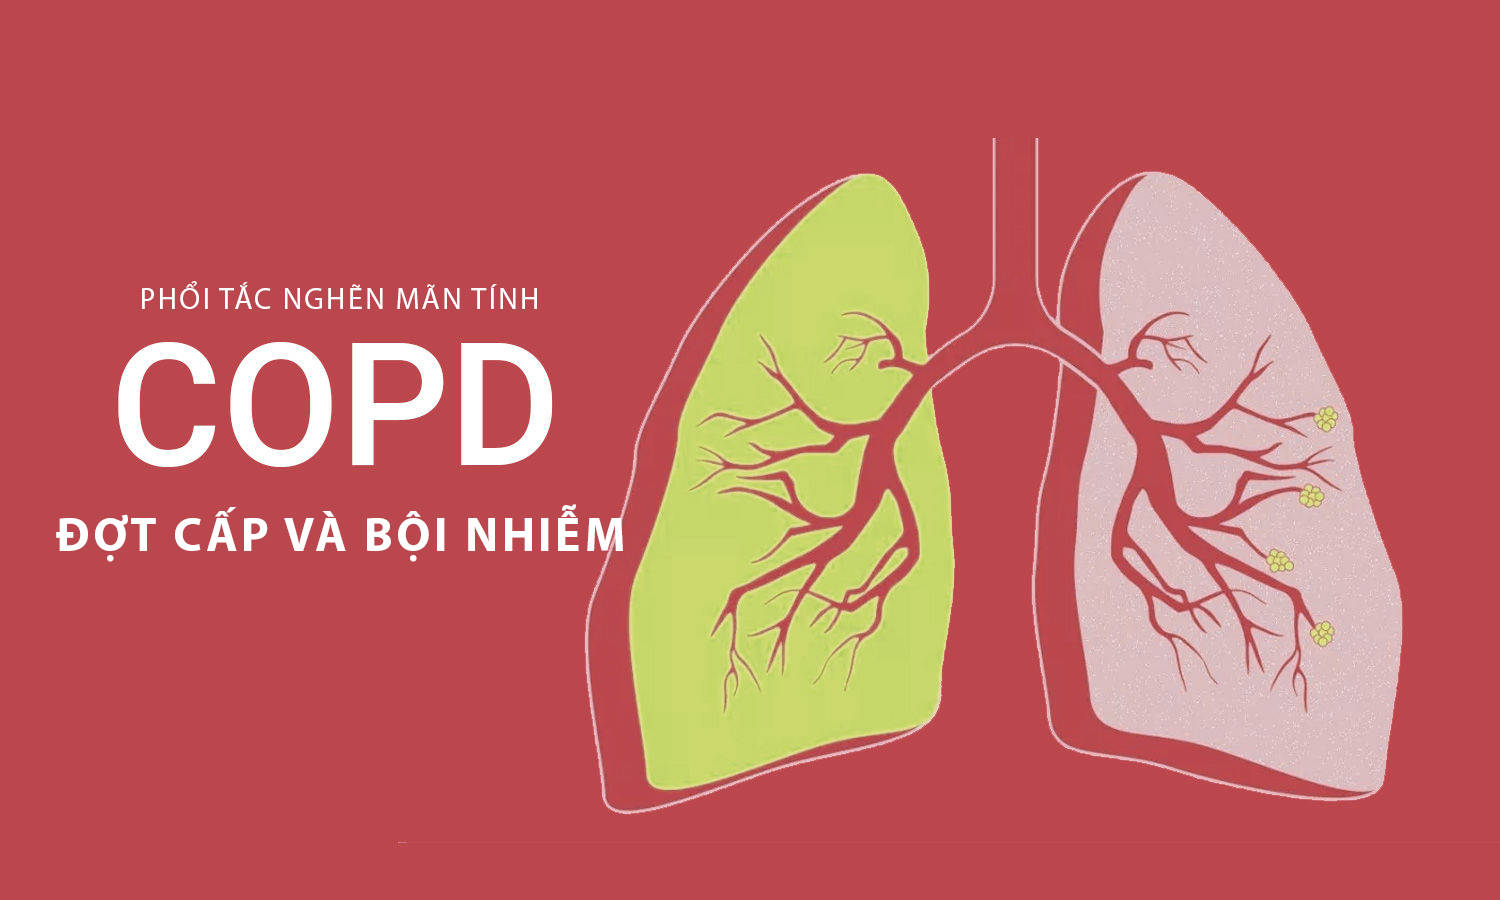 Ảnh: Đợt cấp COPD và COPD bội nhiễm là gì? 